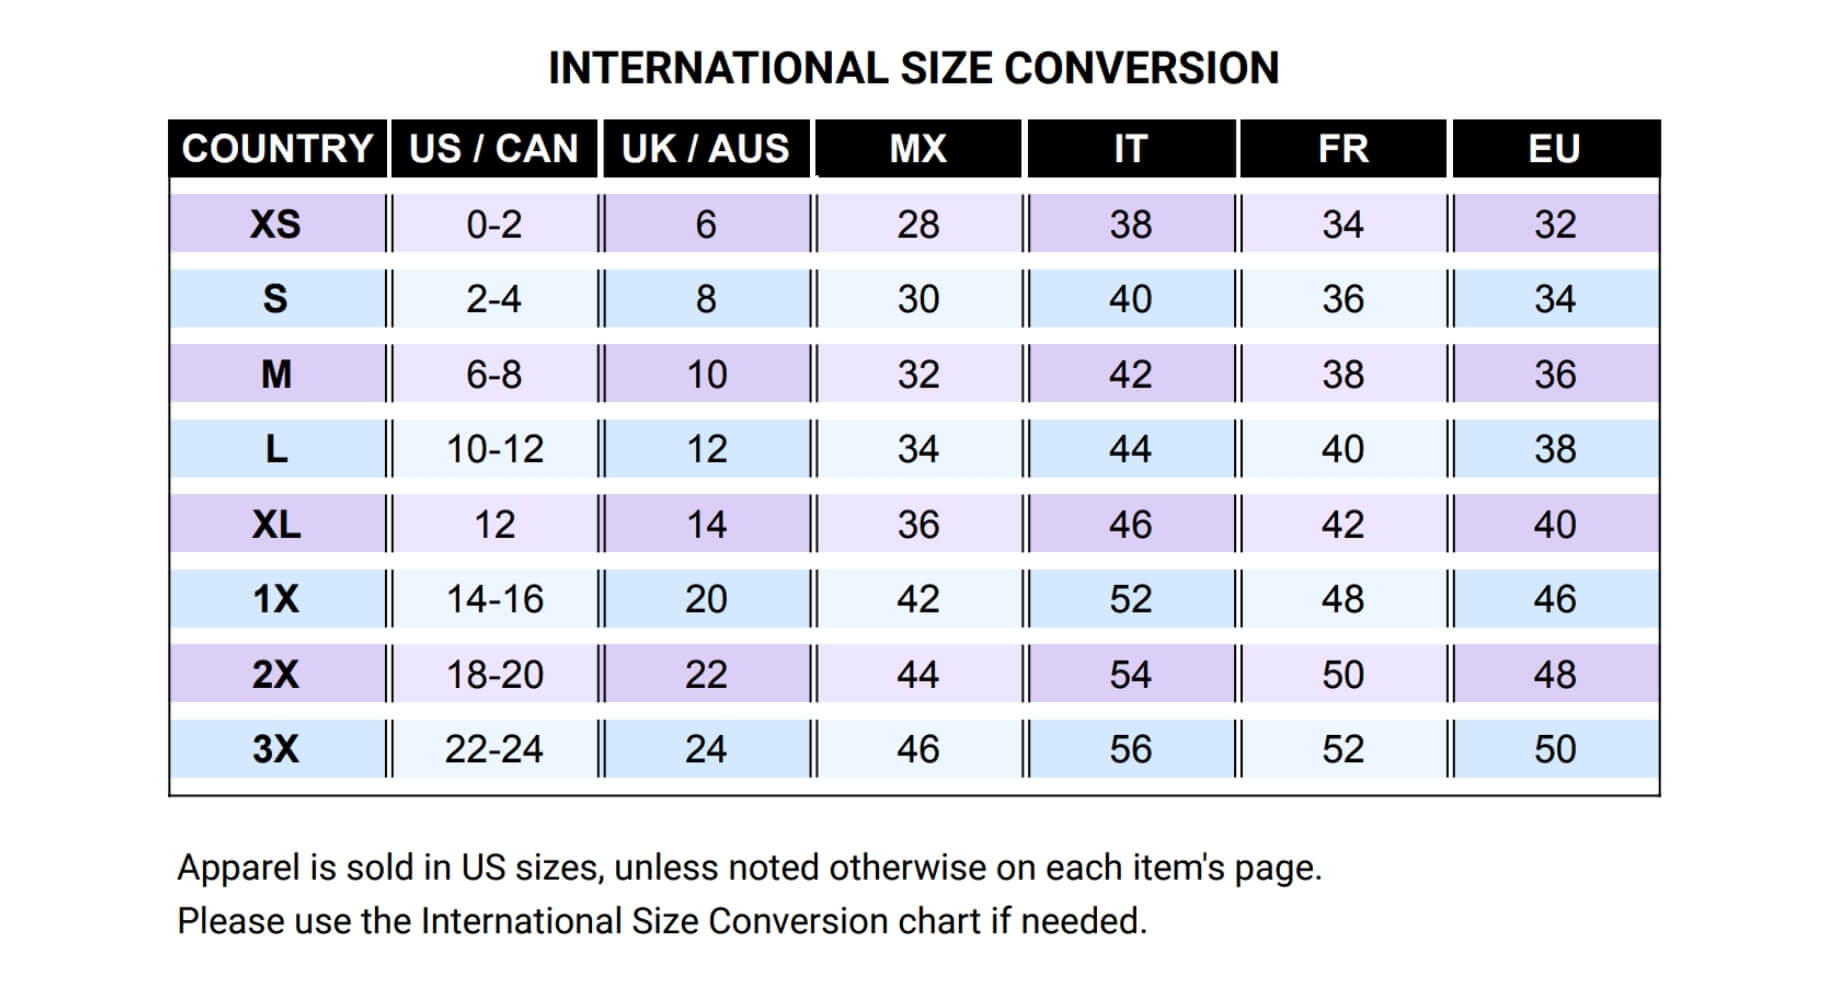 Rebella International Size Conversion chart